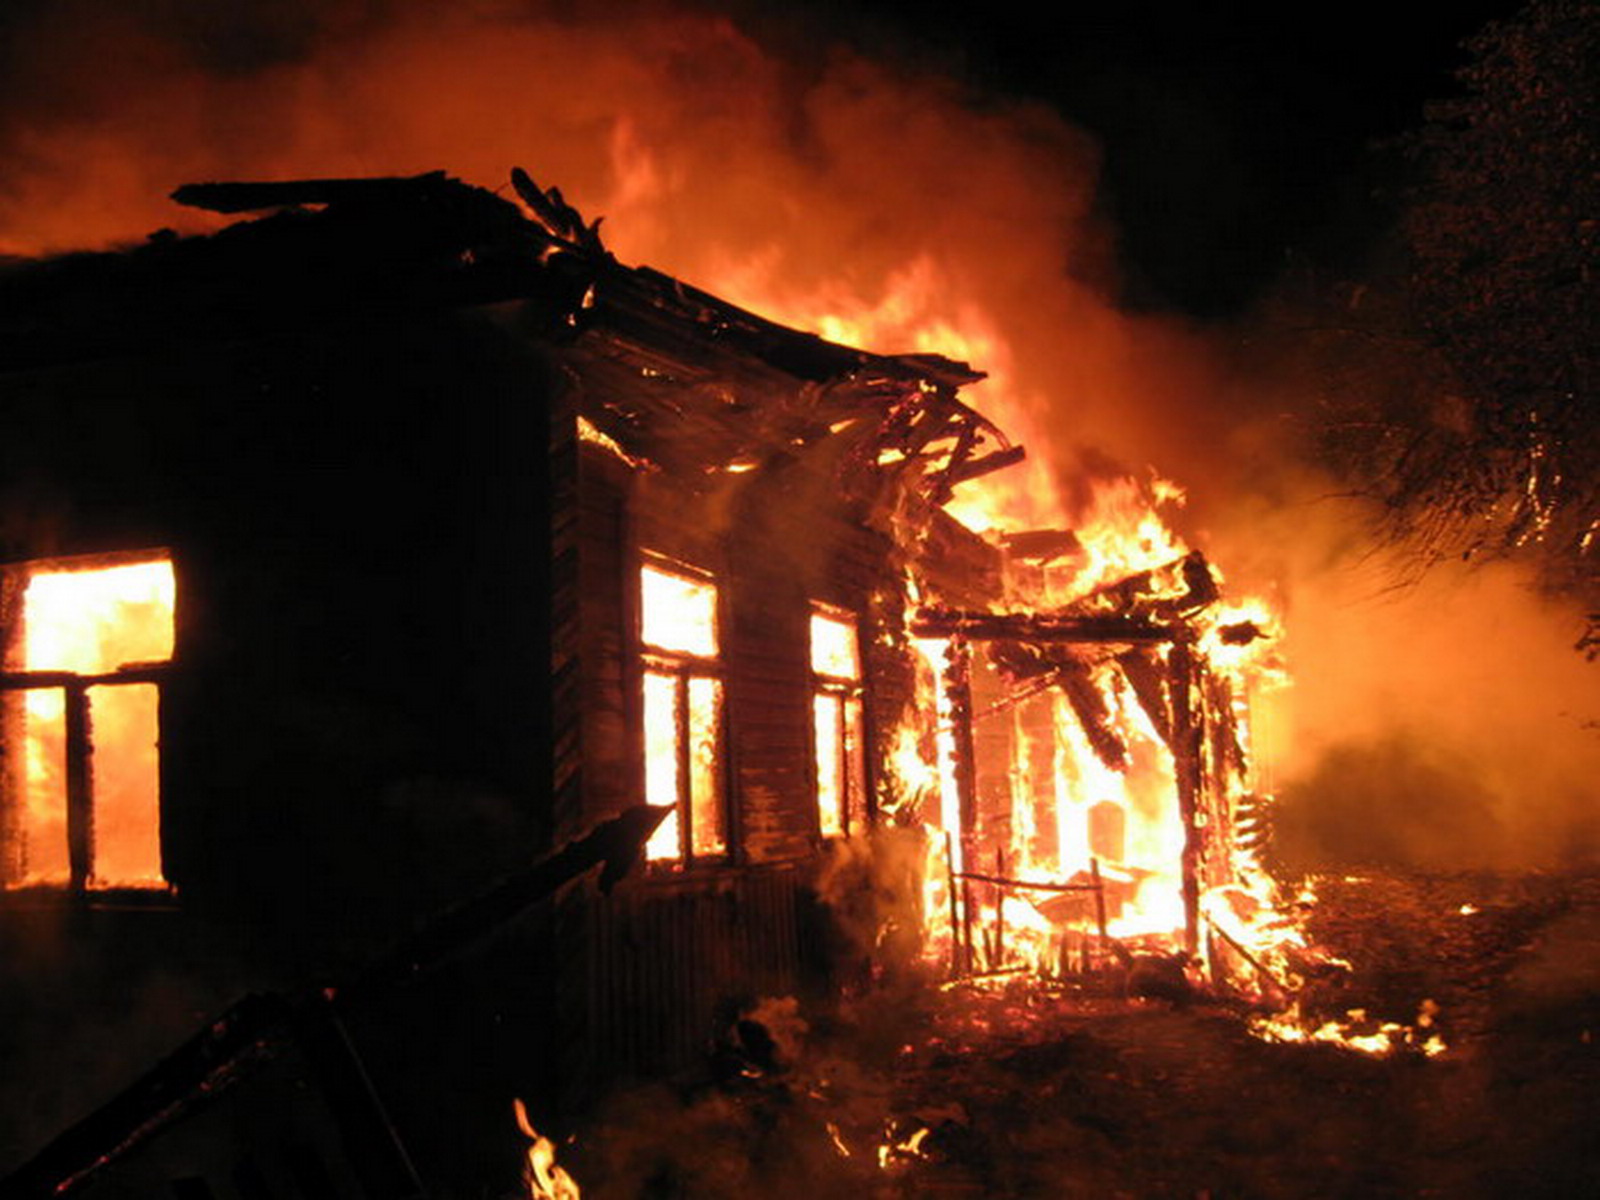 Вчора, 18 січня, близько 15:27 виникла пожежа в надвірній споруді за адресою: м. Рахів, вул. Вербник. 